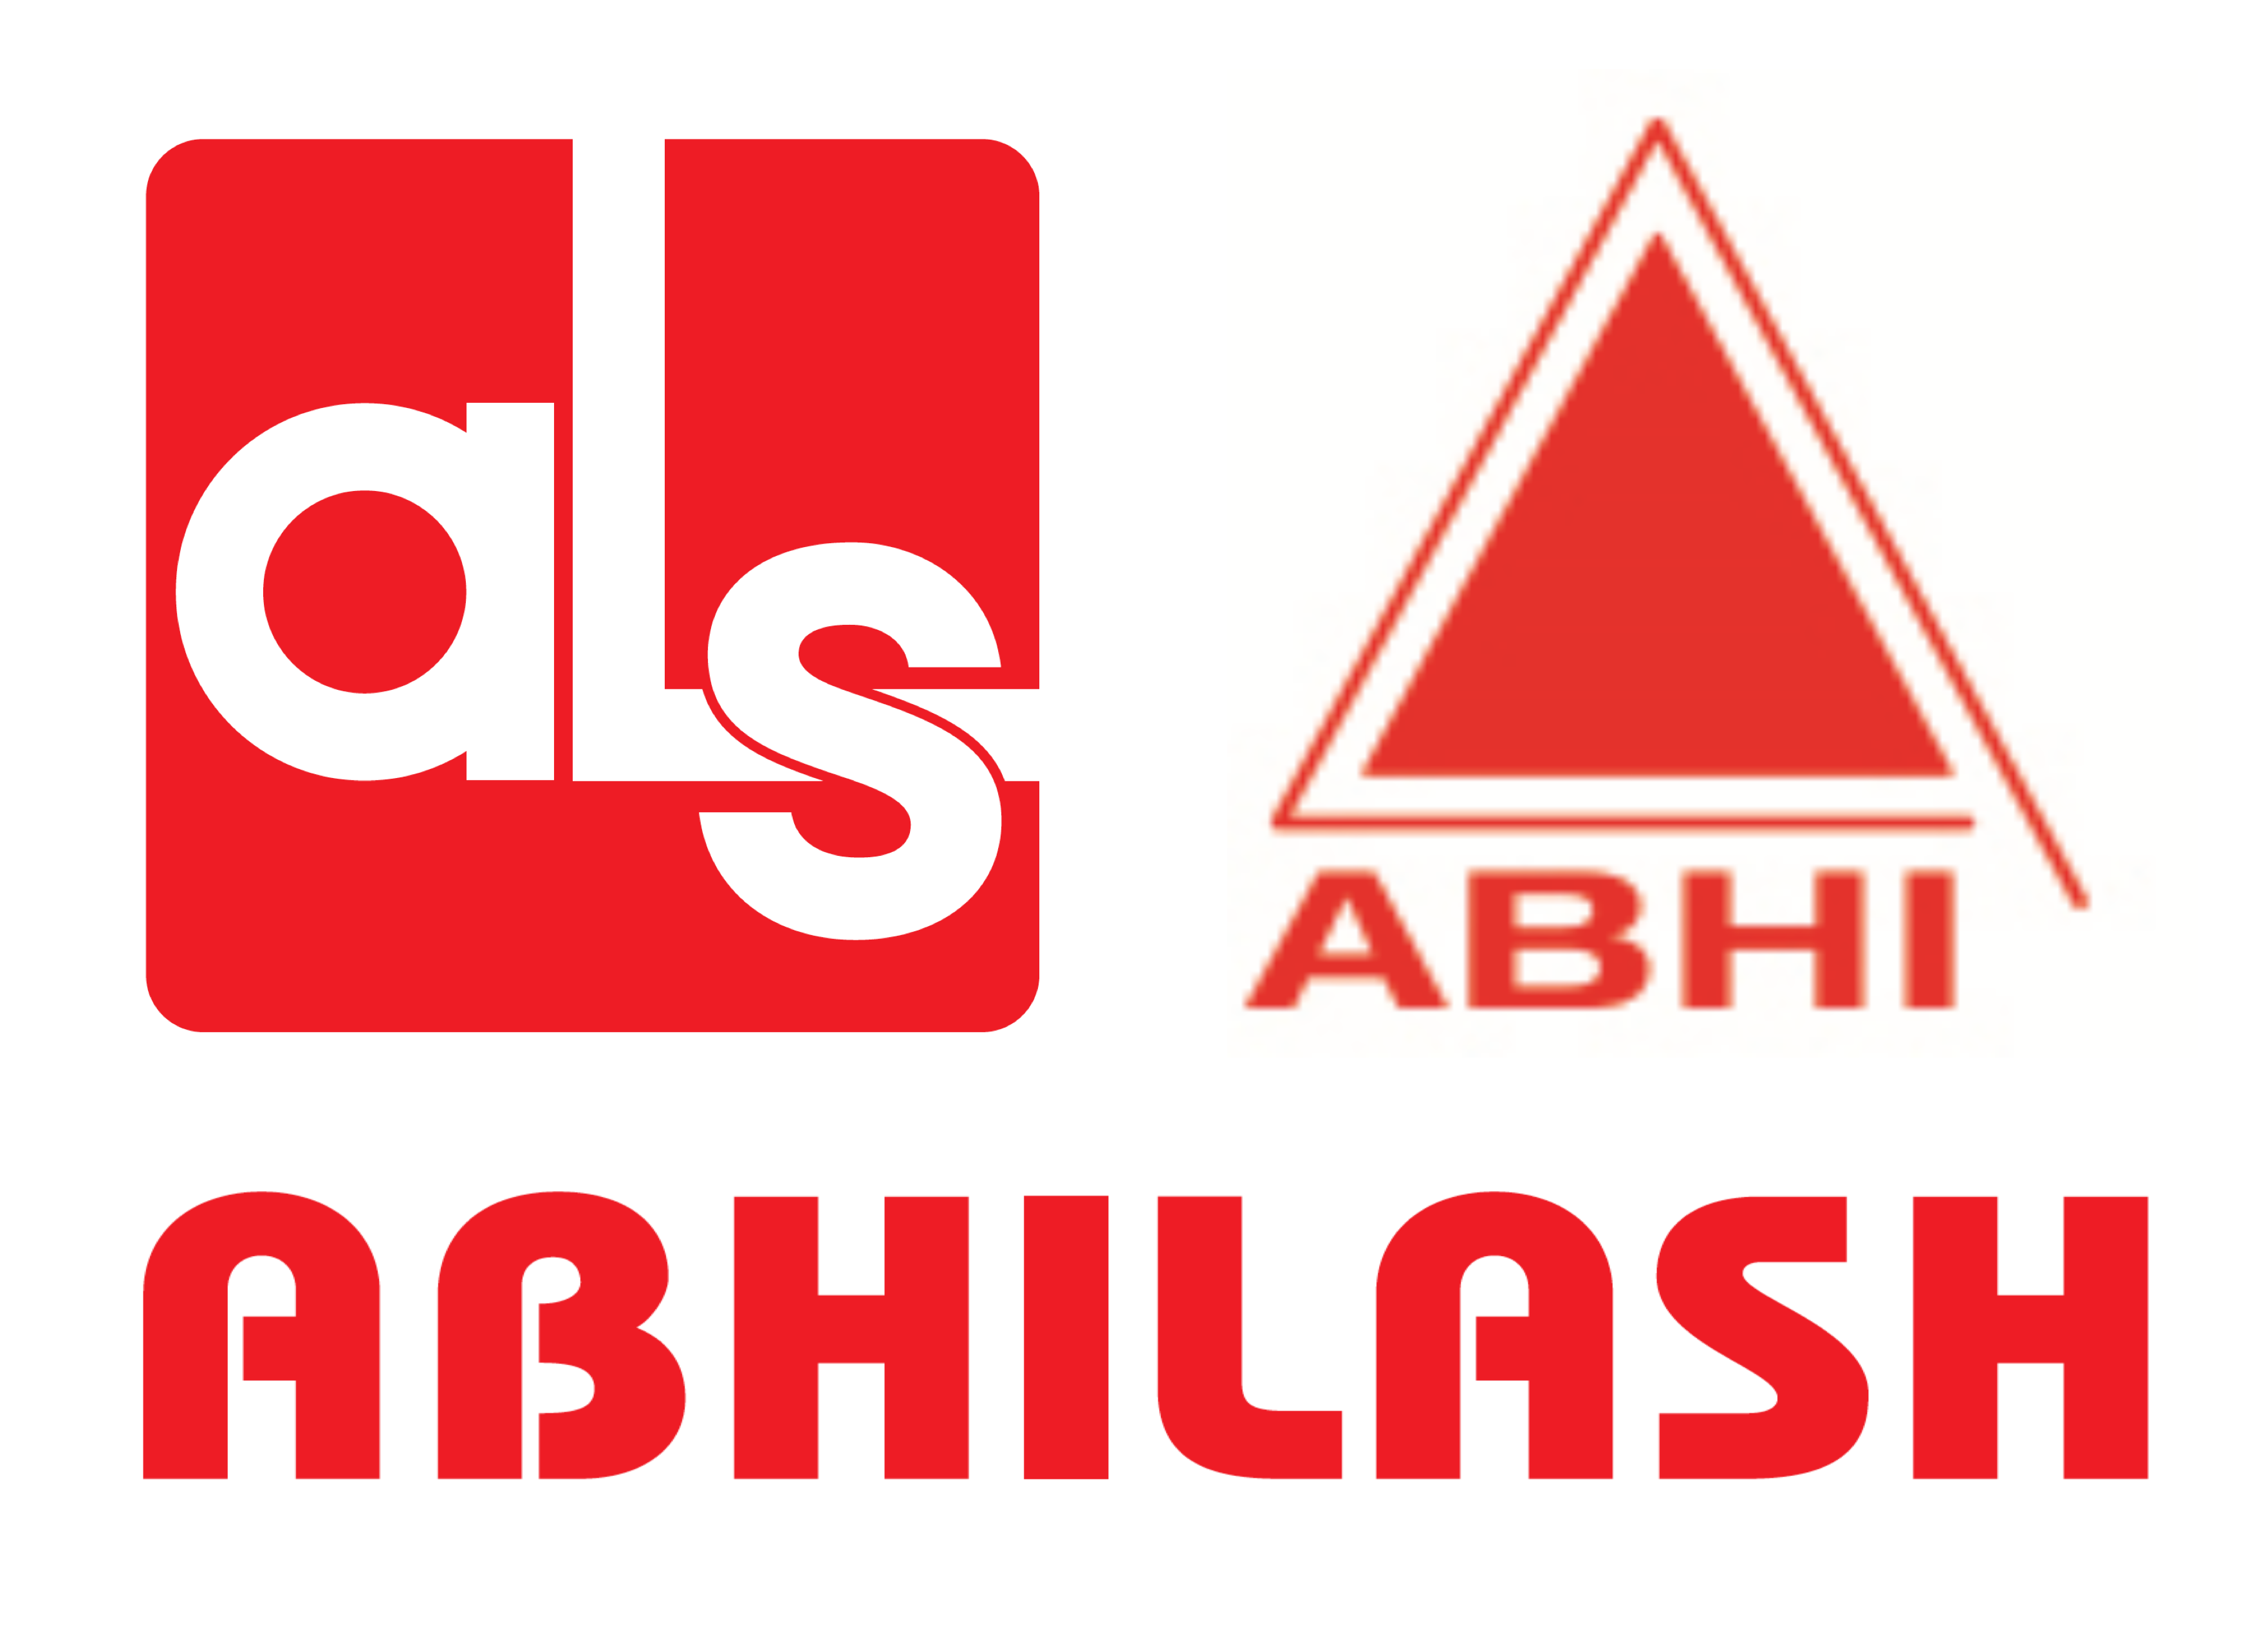 Abhilash Life Sciences LLP